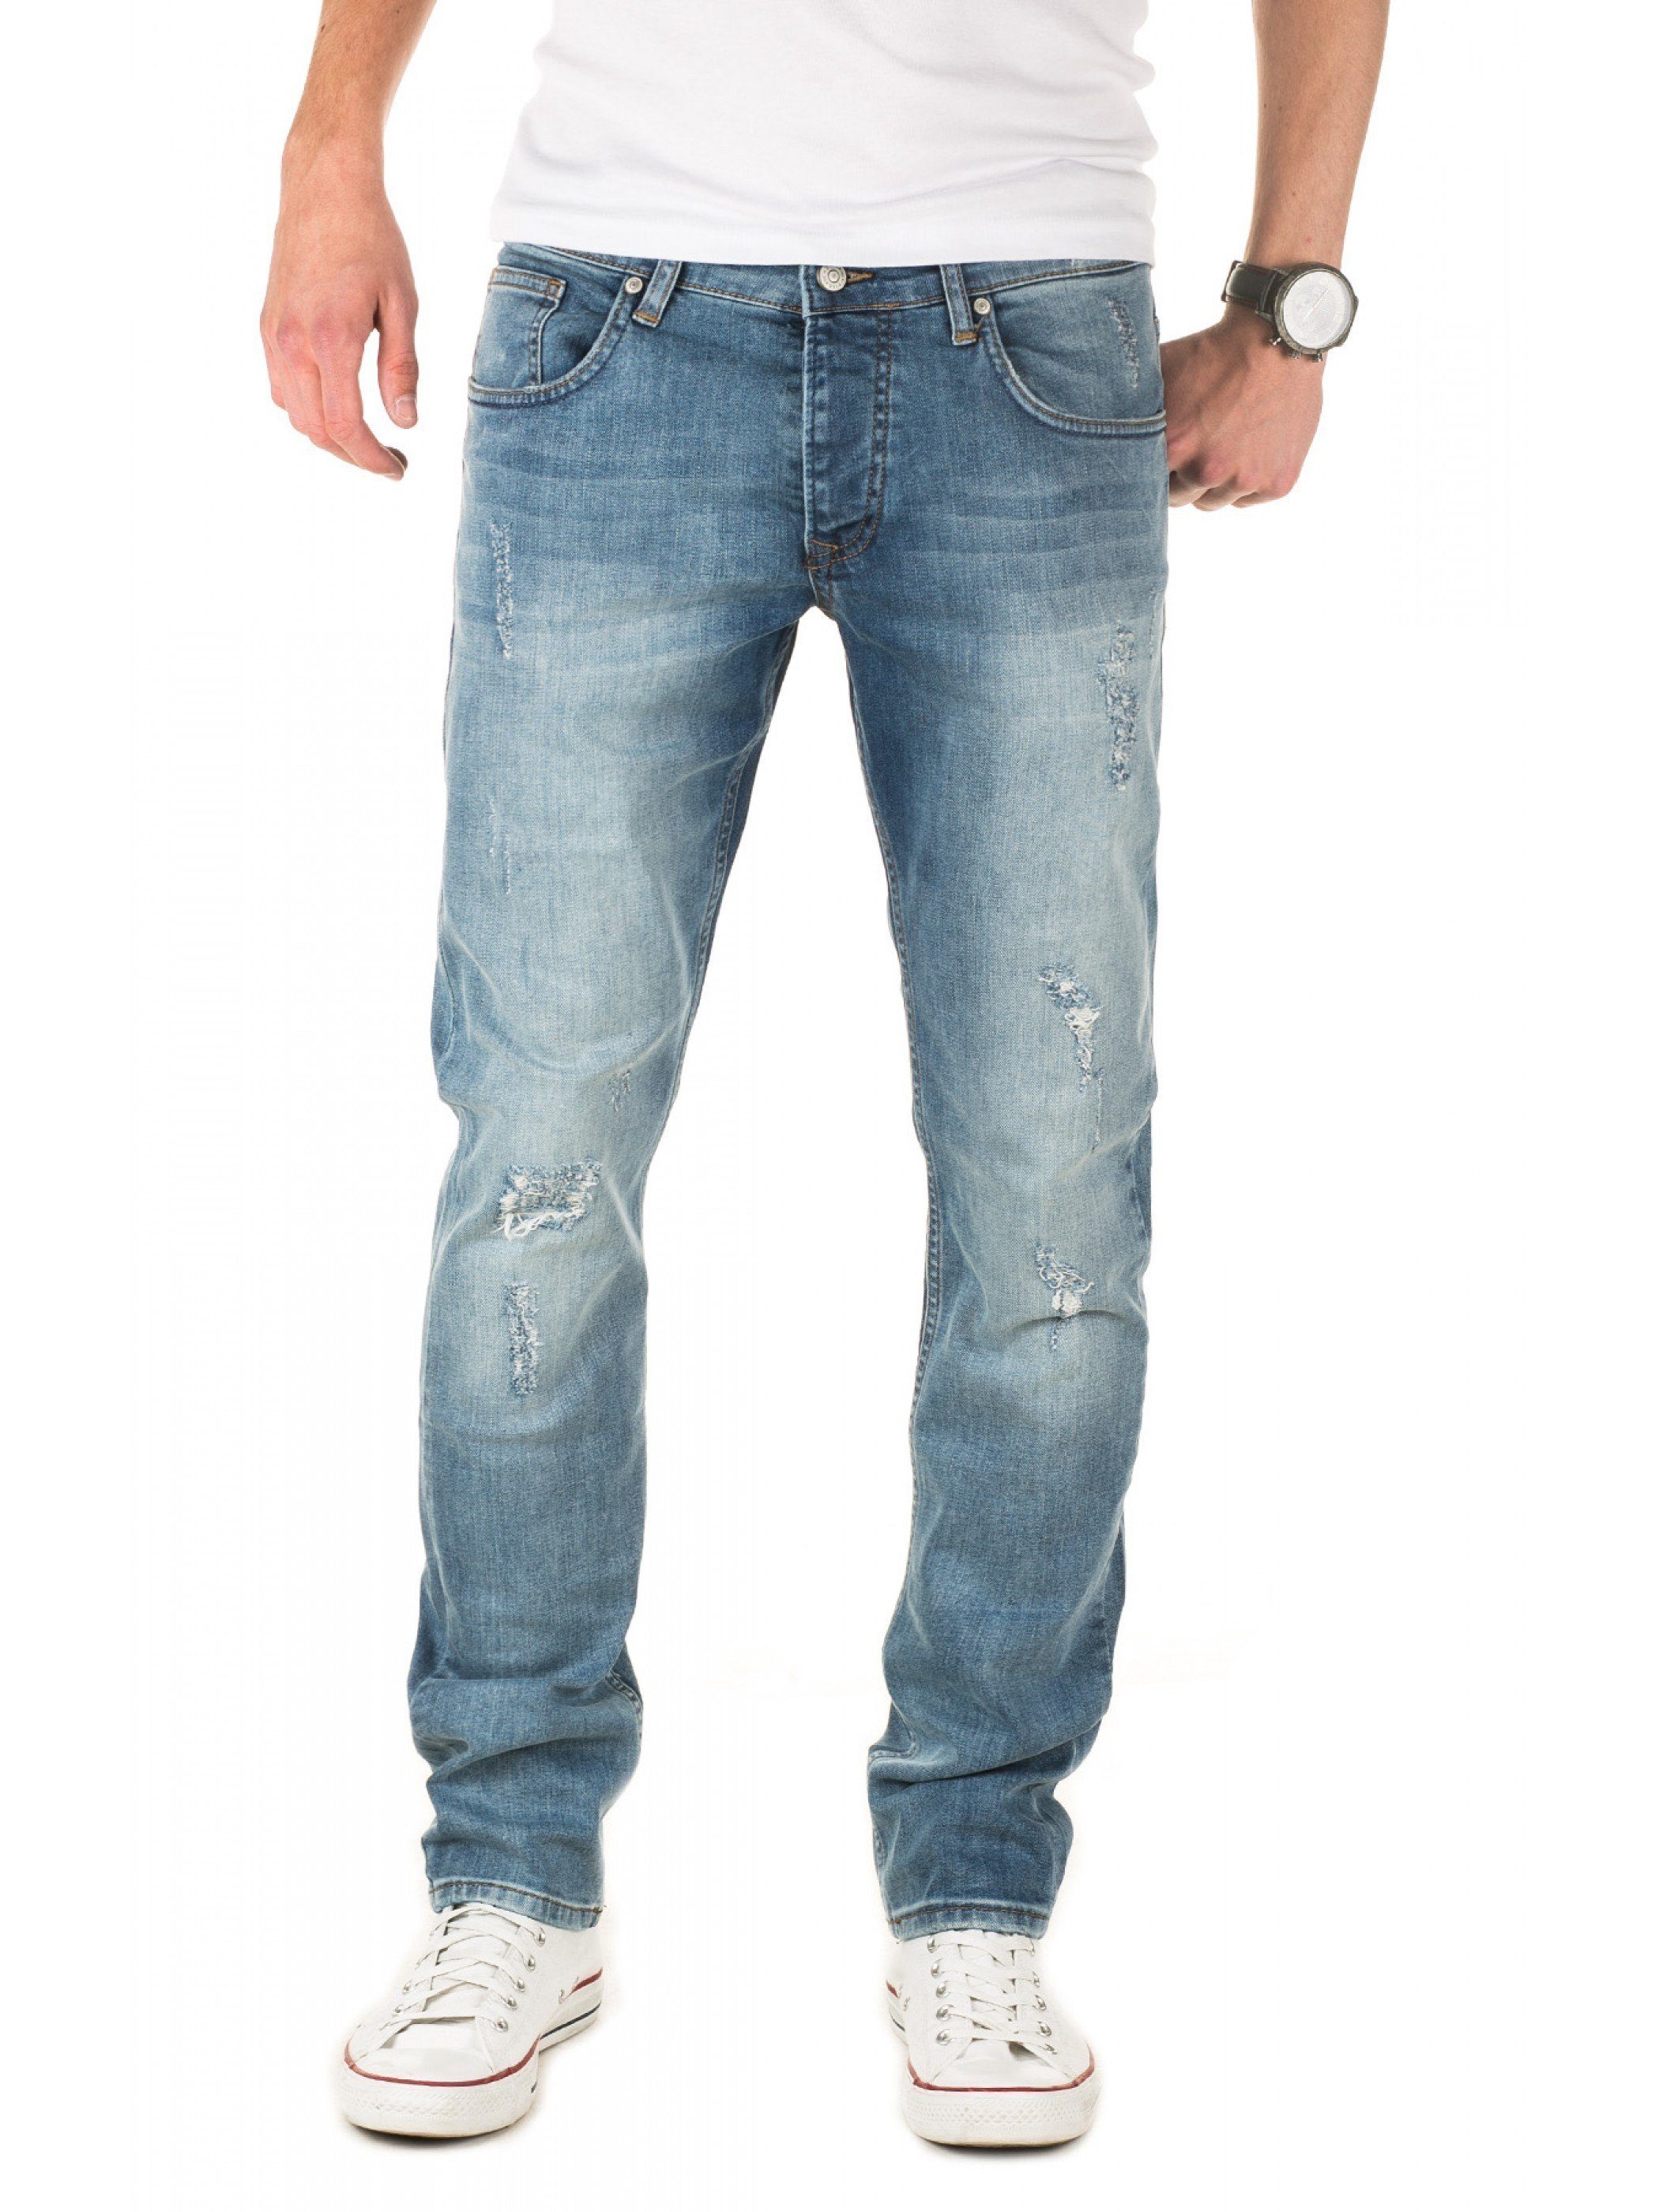 Herren Ankle-Jeans kaufen » Herren Knöchelfreie Jeans | OTTO